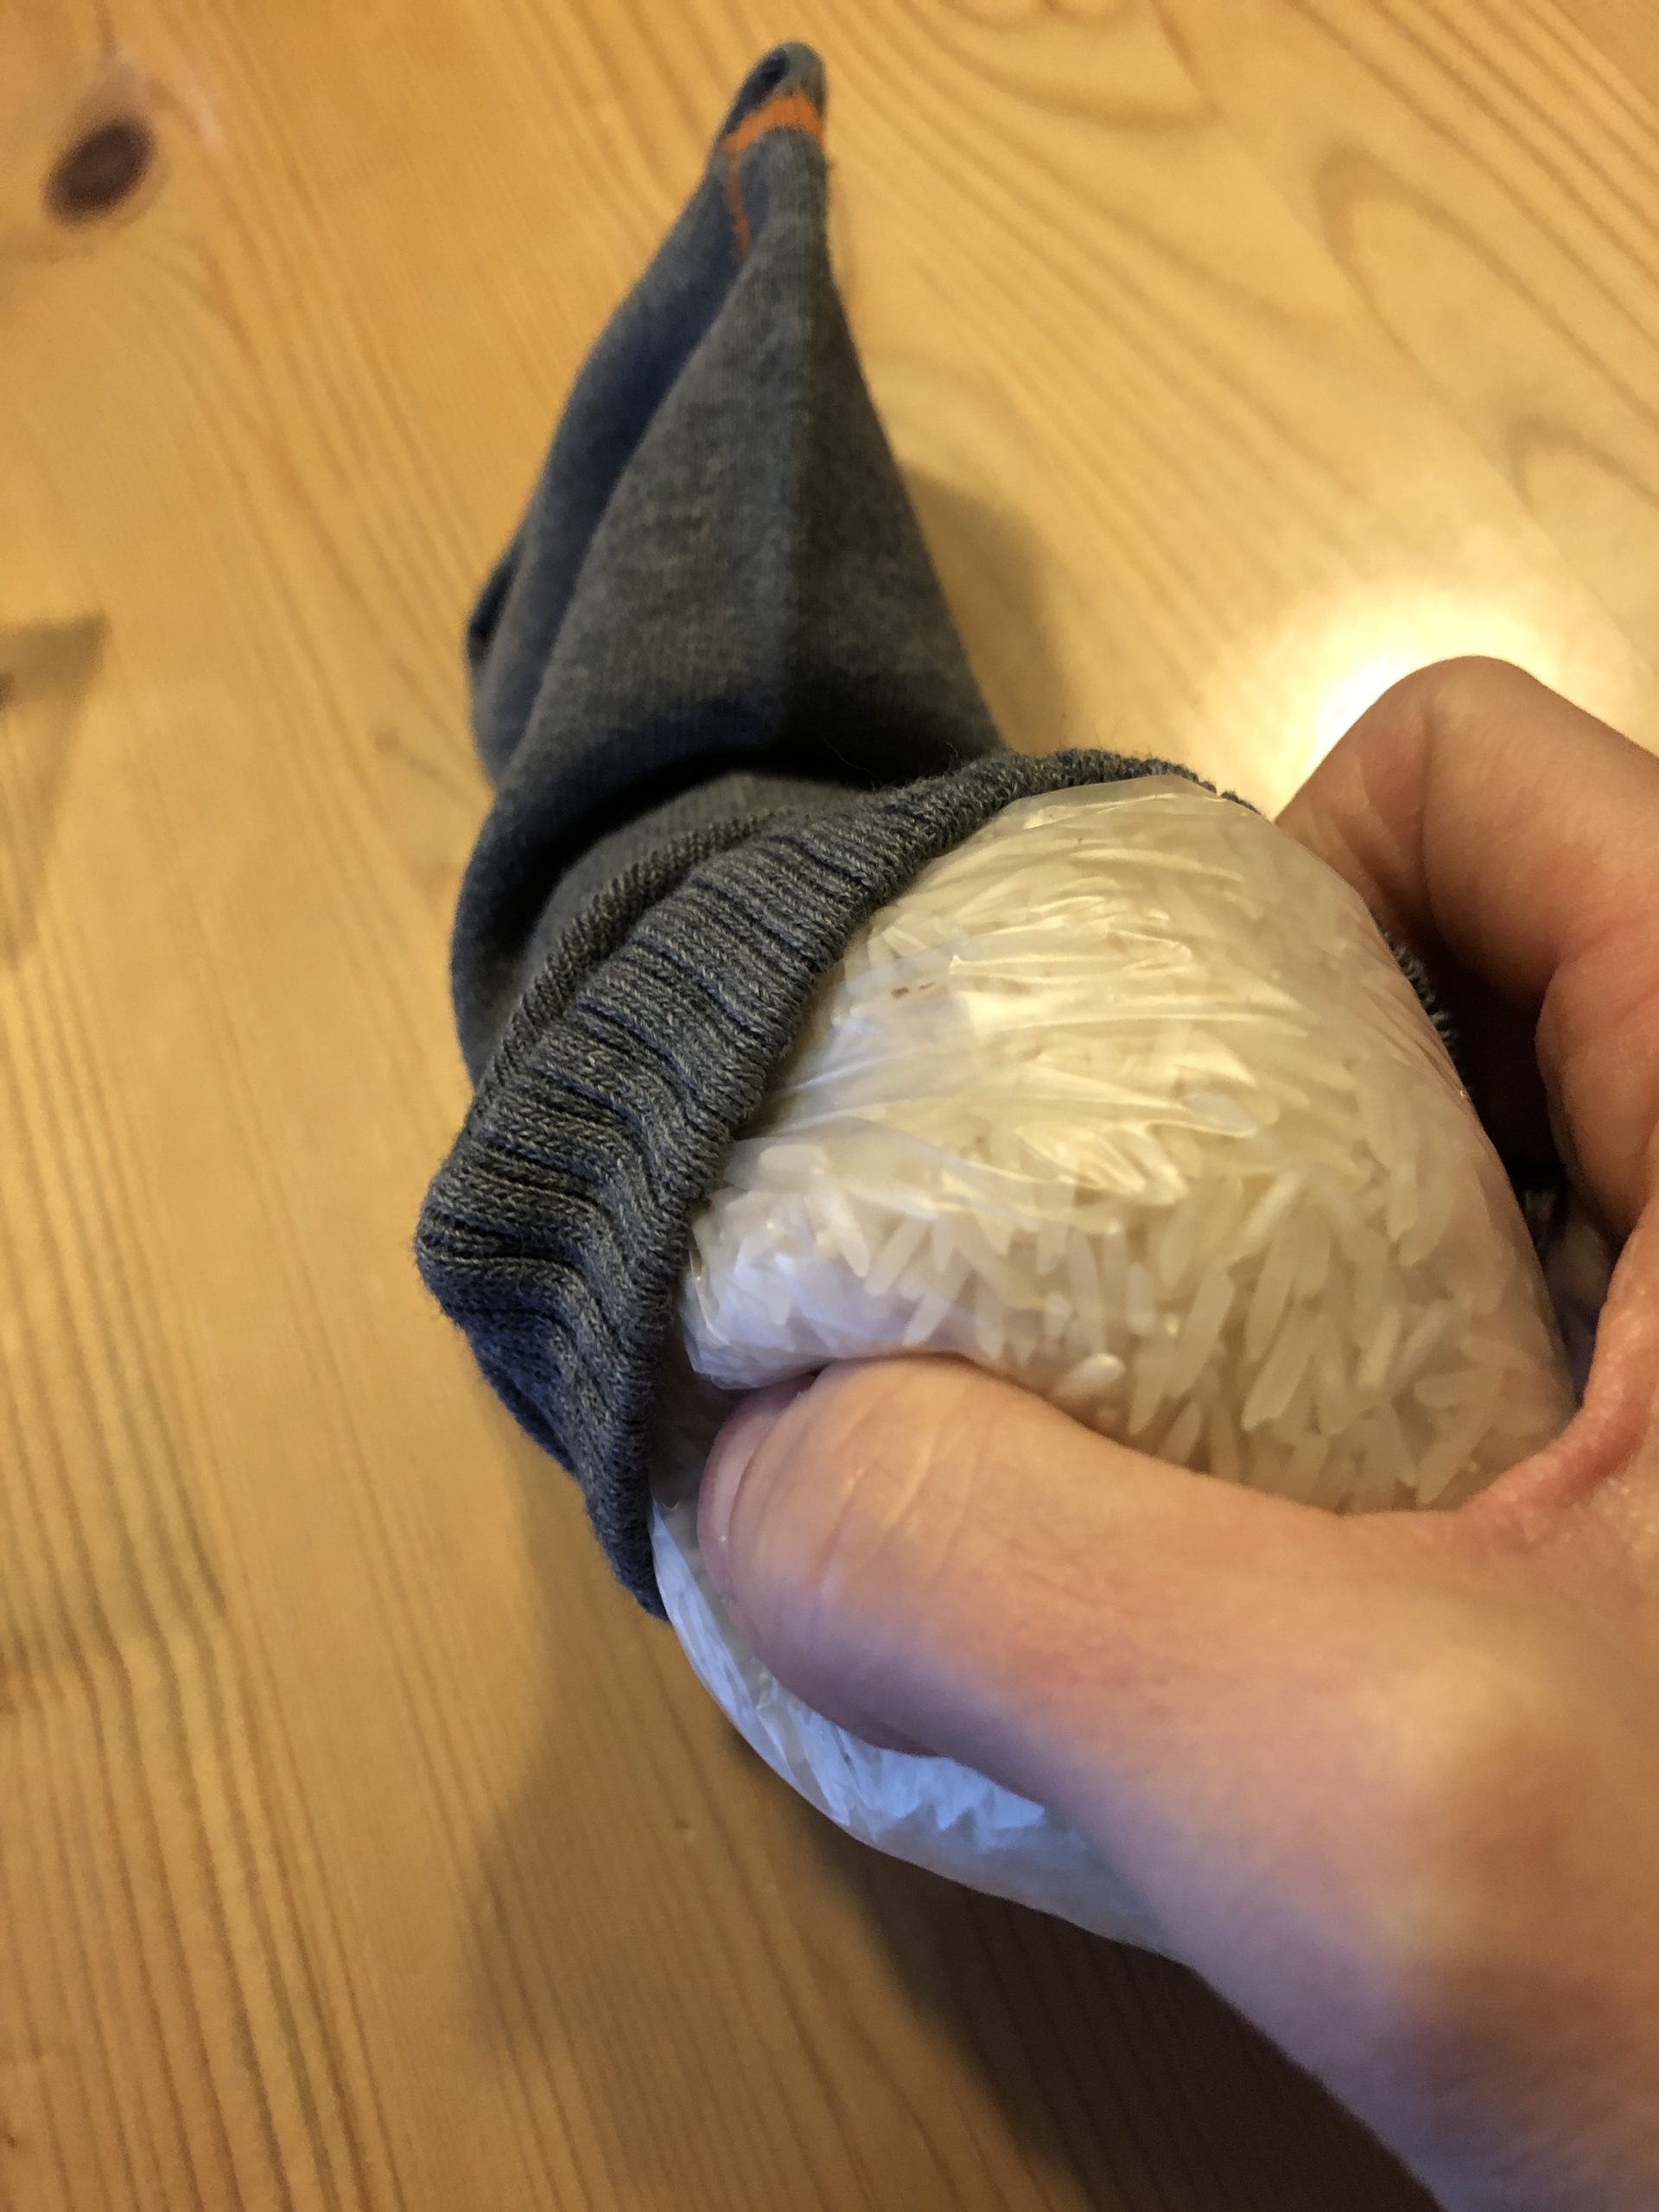 Bild zum Schritt 9 für das Bastel- und DIY-Abenteuer für Kinder: 'Jetzt nehmt ihr die Baumwollsocke und steckt die zugebundene Tüte...'